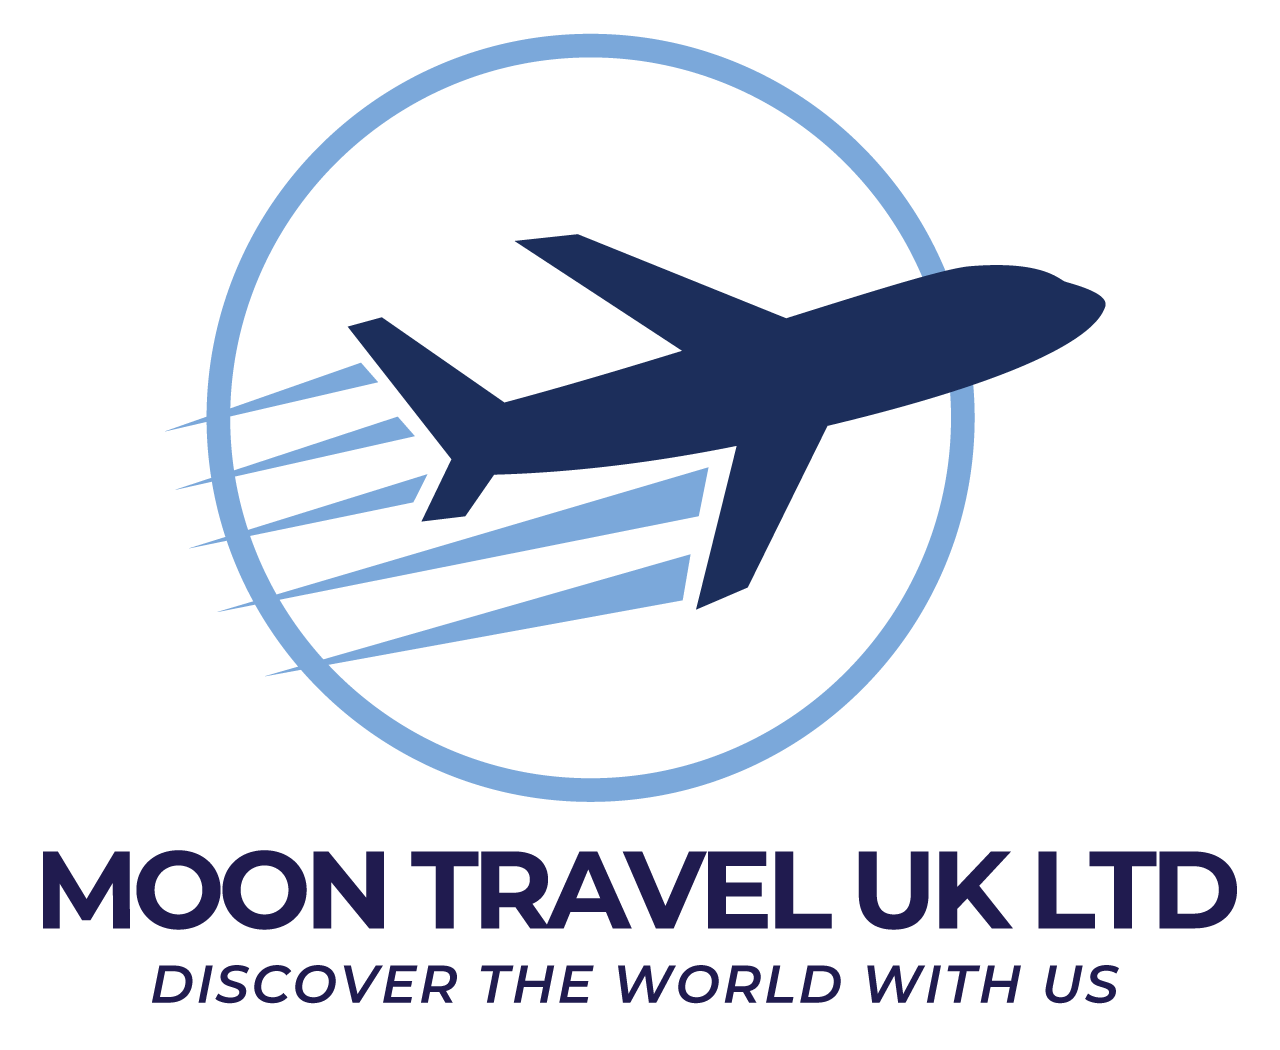 Moon Travel UK Best Travel partner UK Travel Solution